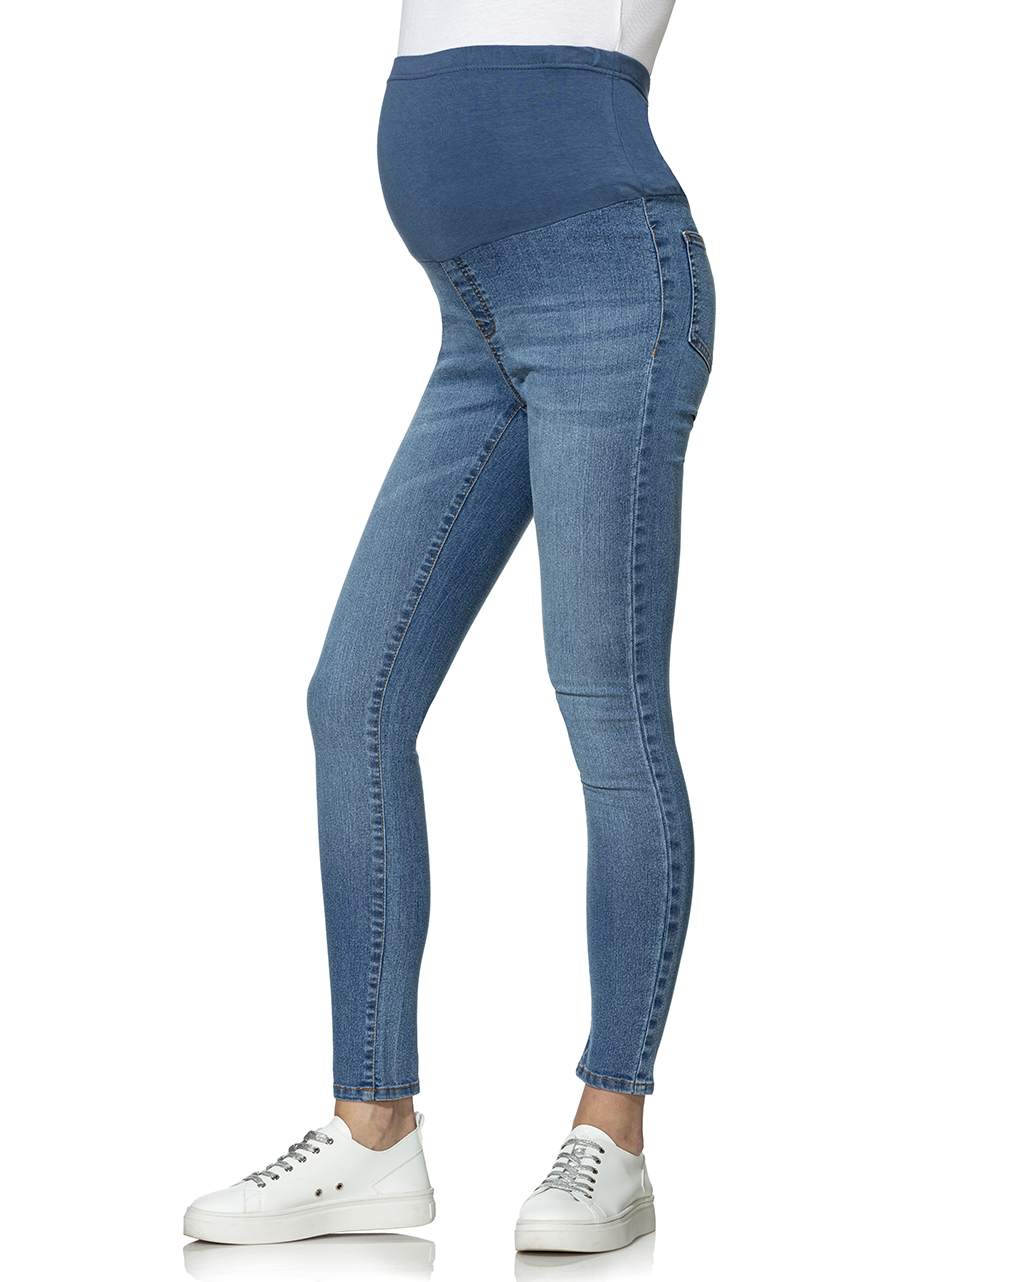 γυναικείο τζιν παντελόνι εγκυμοσύνης ανοιχτό μπλε - Prénatal